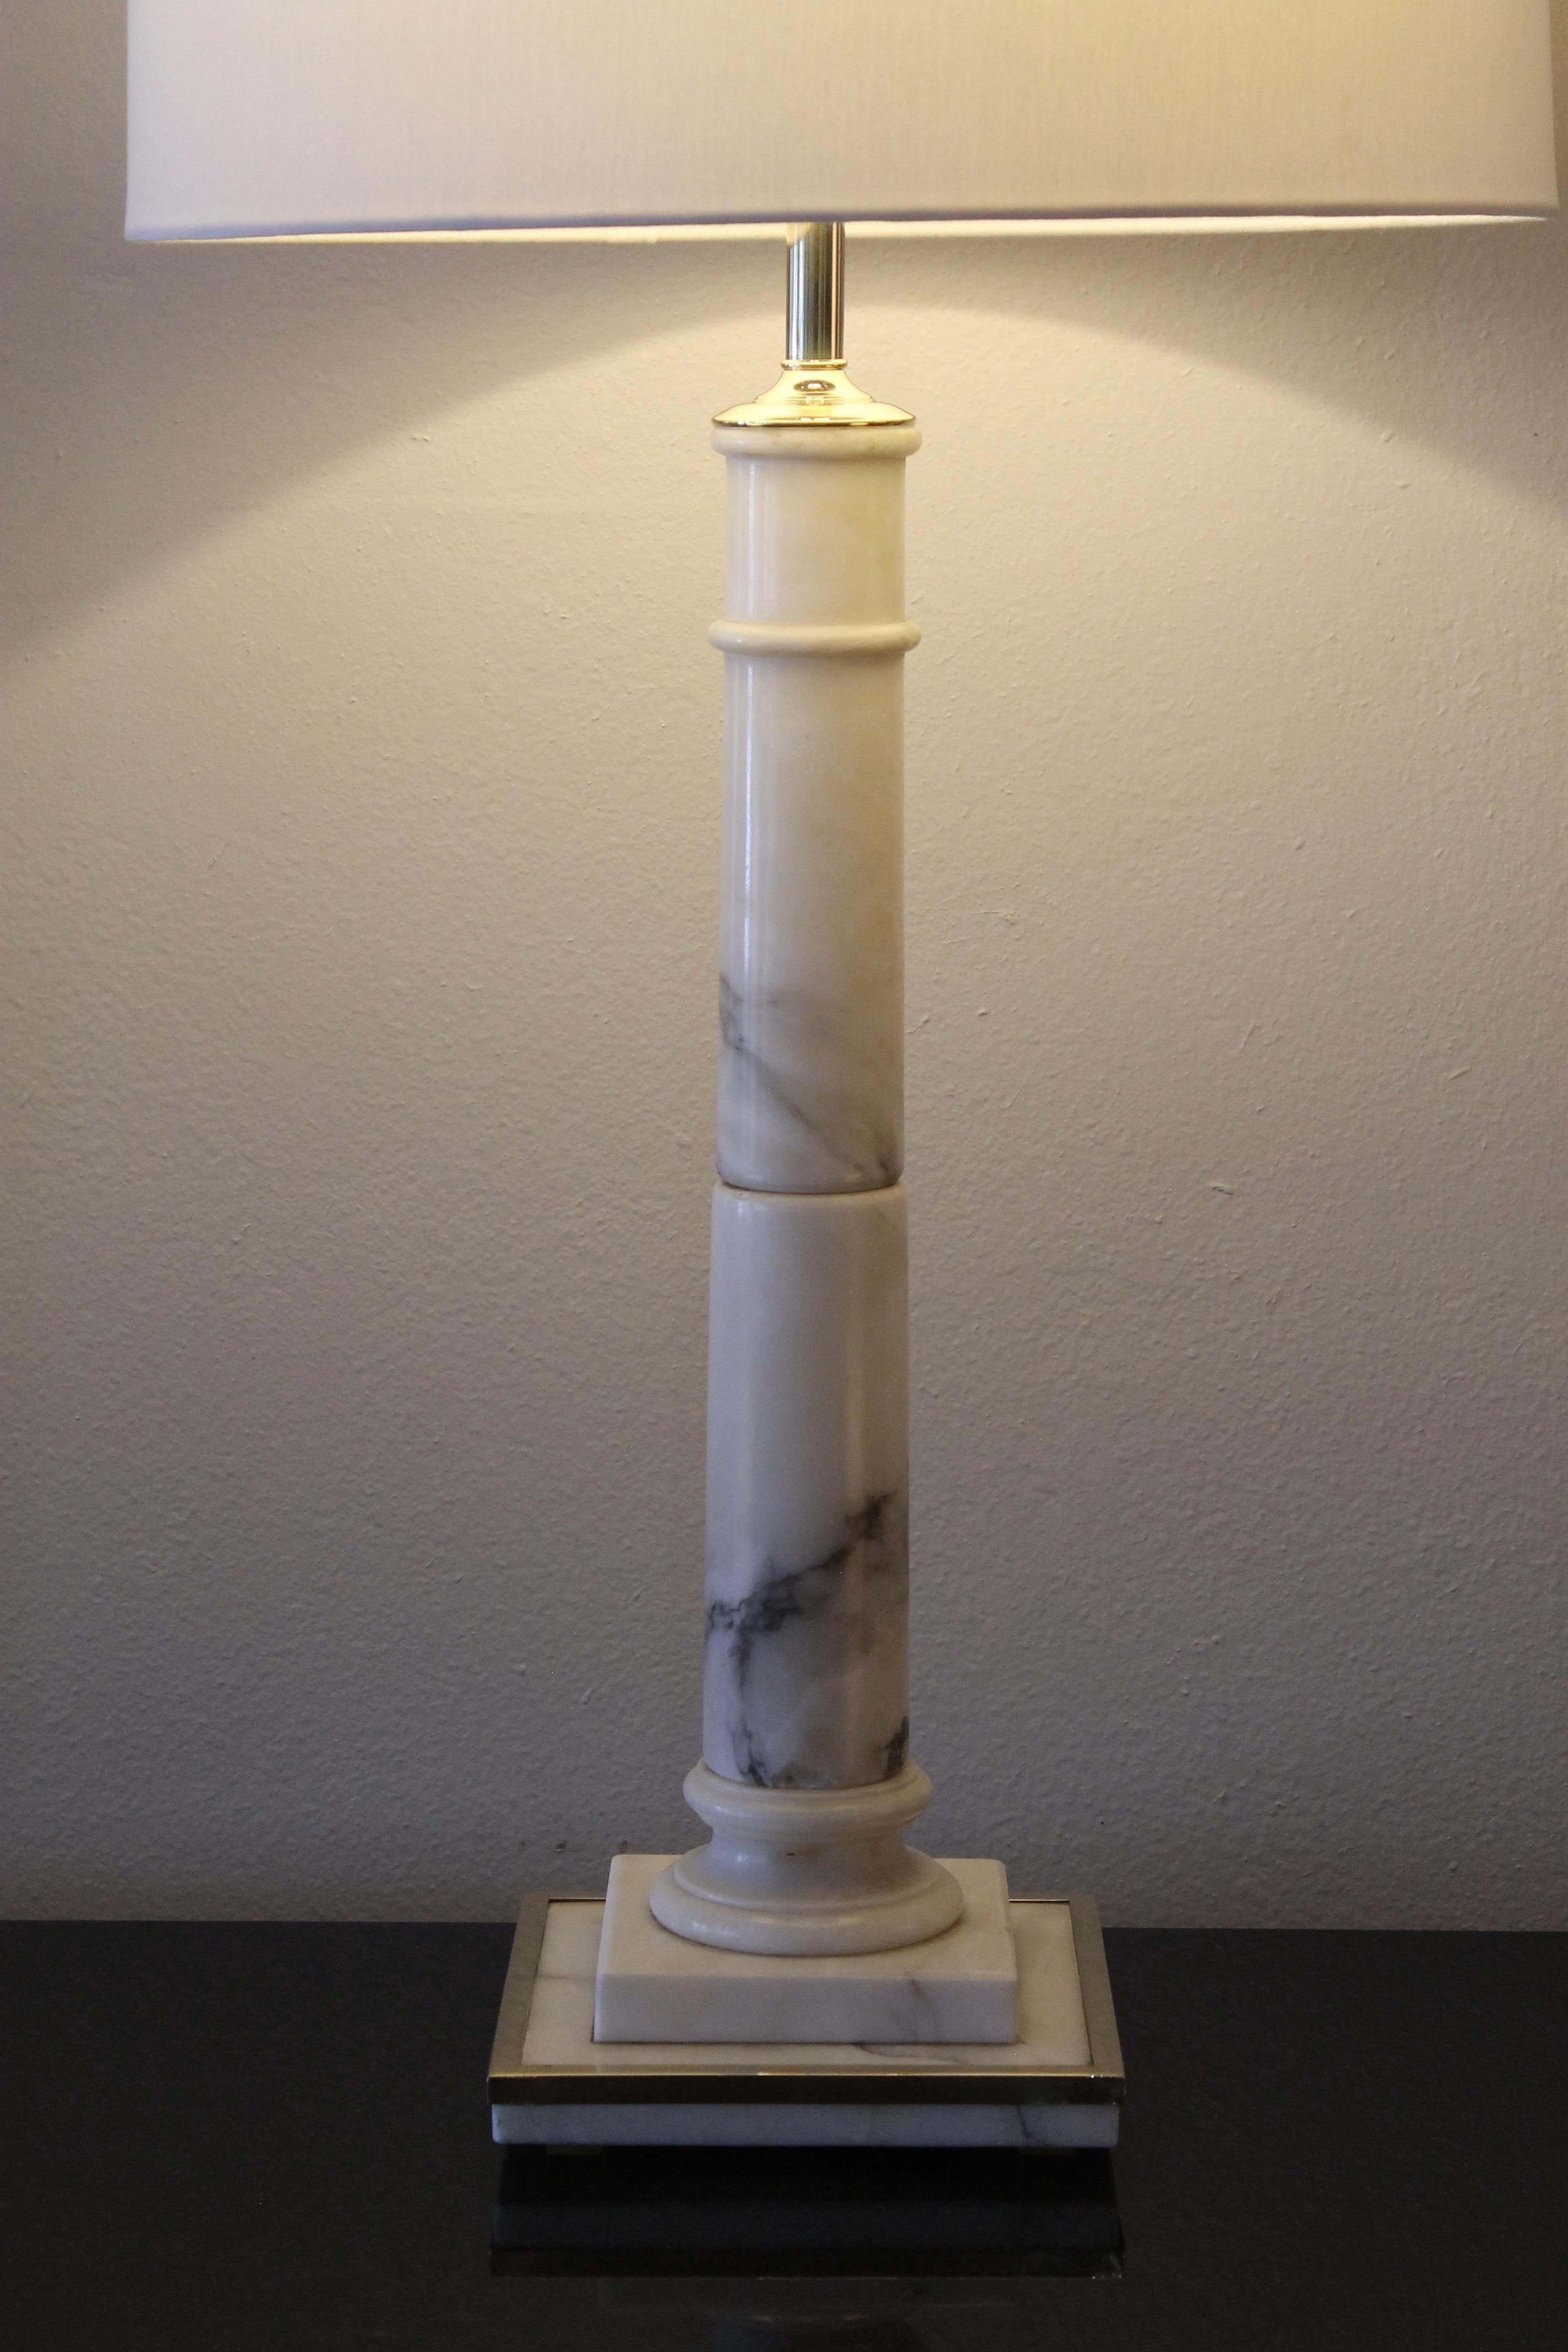 Lampe en marbre avec contour en laiton sur la base pour I. Magnin & Company, San Francisco, CA. La lampe a été recâblée professionnellement pour des ampoules à 3 voies. La lampe mesure 26,5